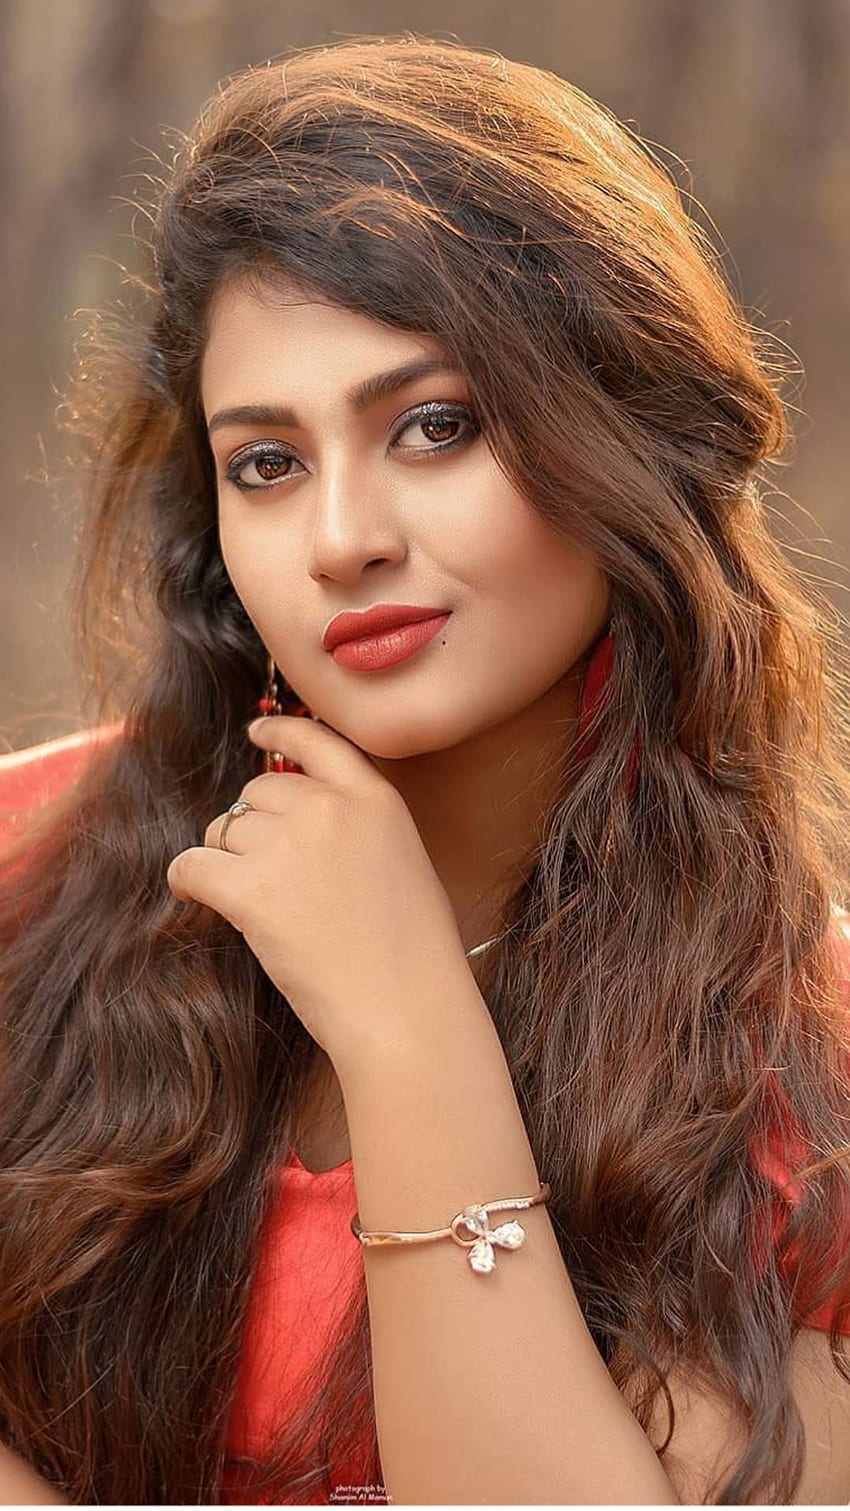 Gadis penuh kecantikan, Gadis Cantik India wallpaper ponsel HD